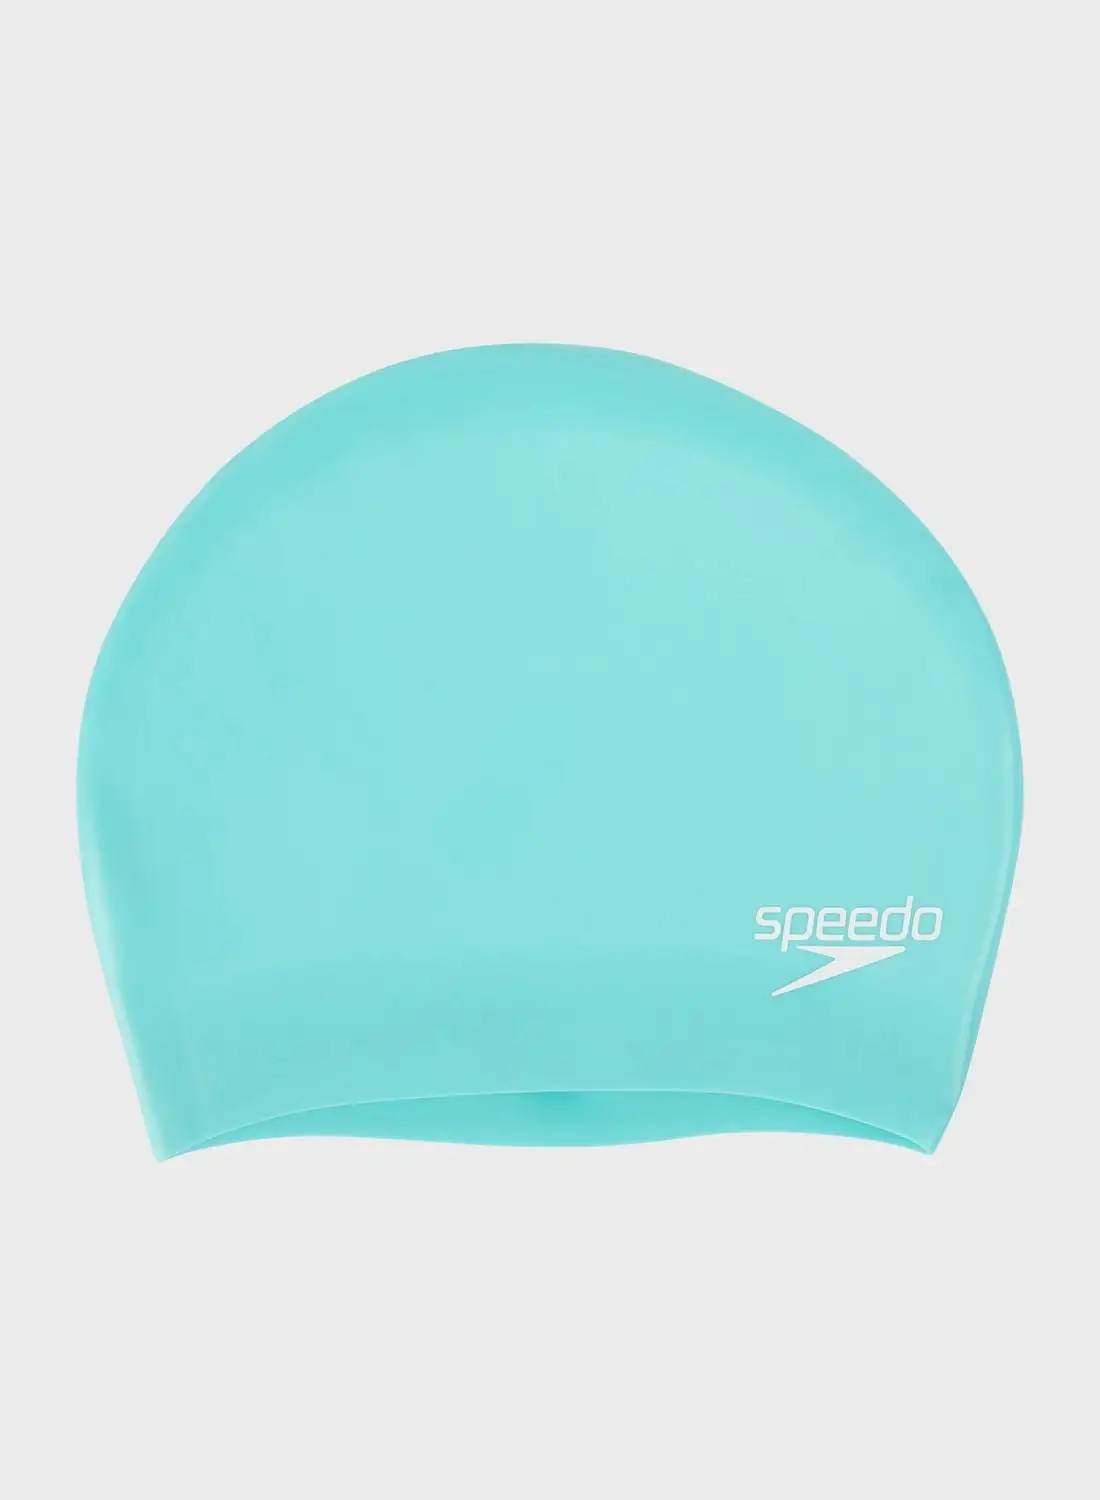 speedo Silicone Swimming Cap